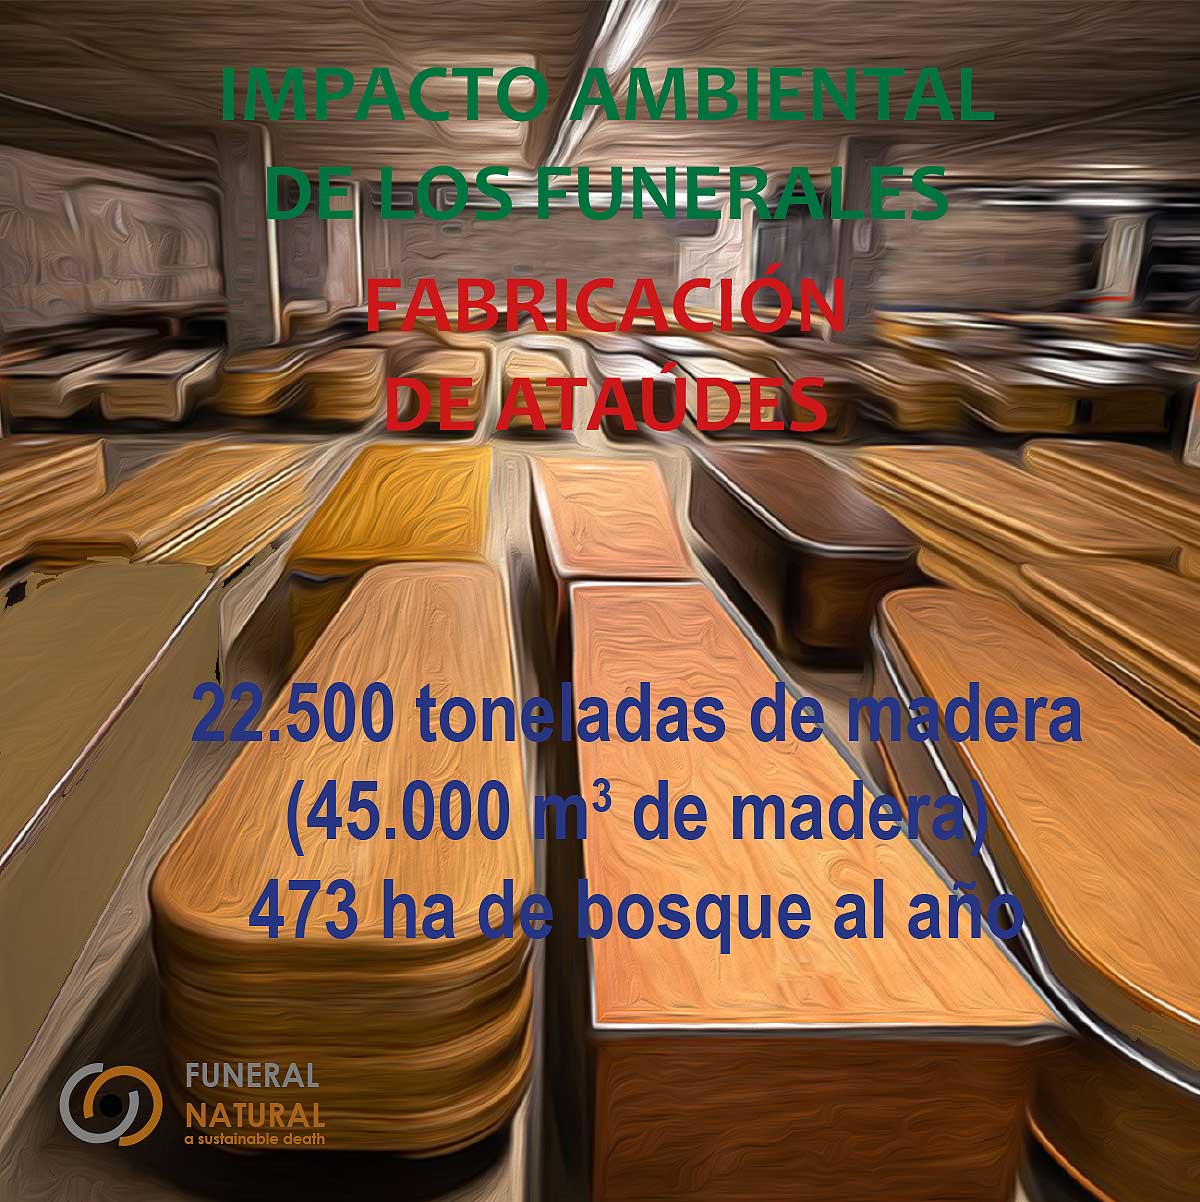 Impacto ambiental de la fabricación de ataúdes. Gráfico: Funeral Natural